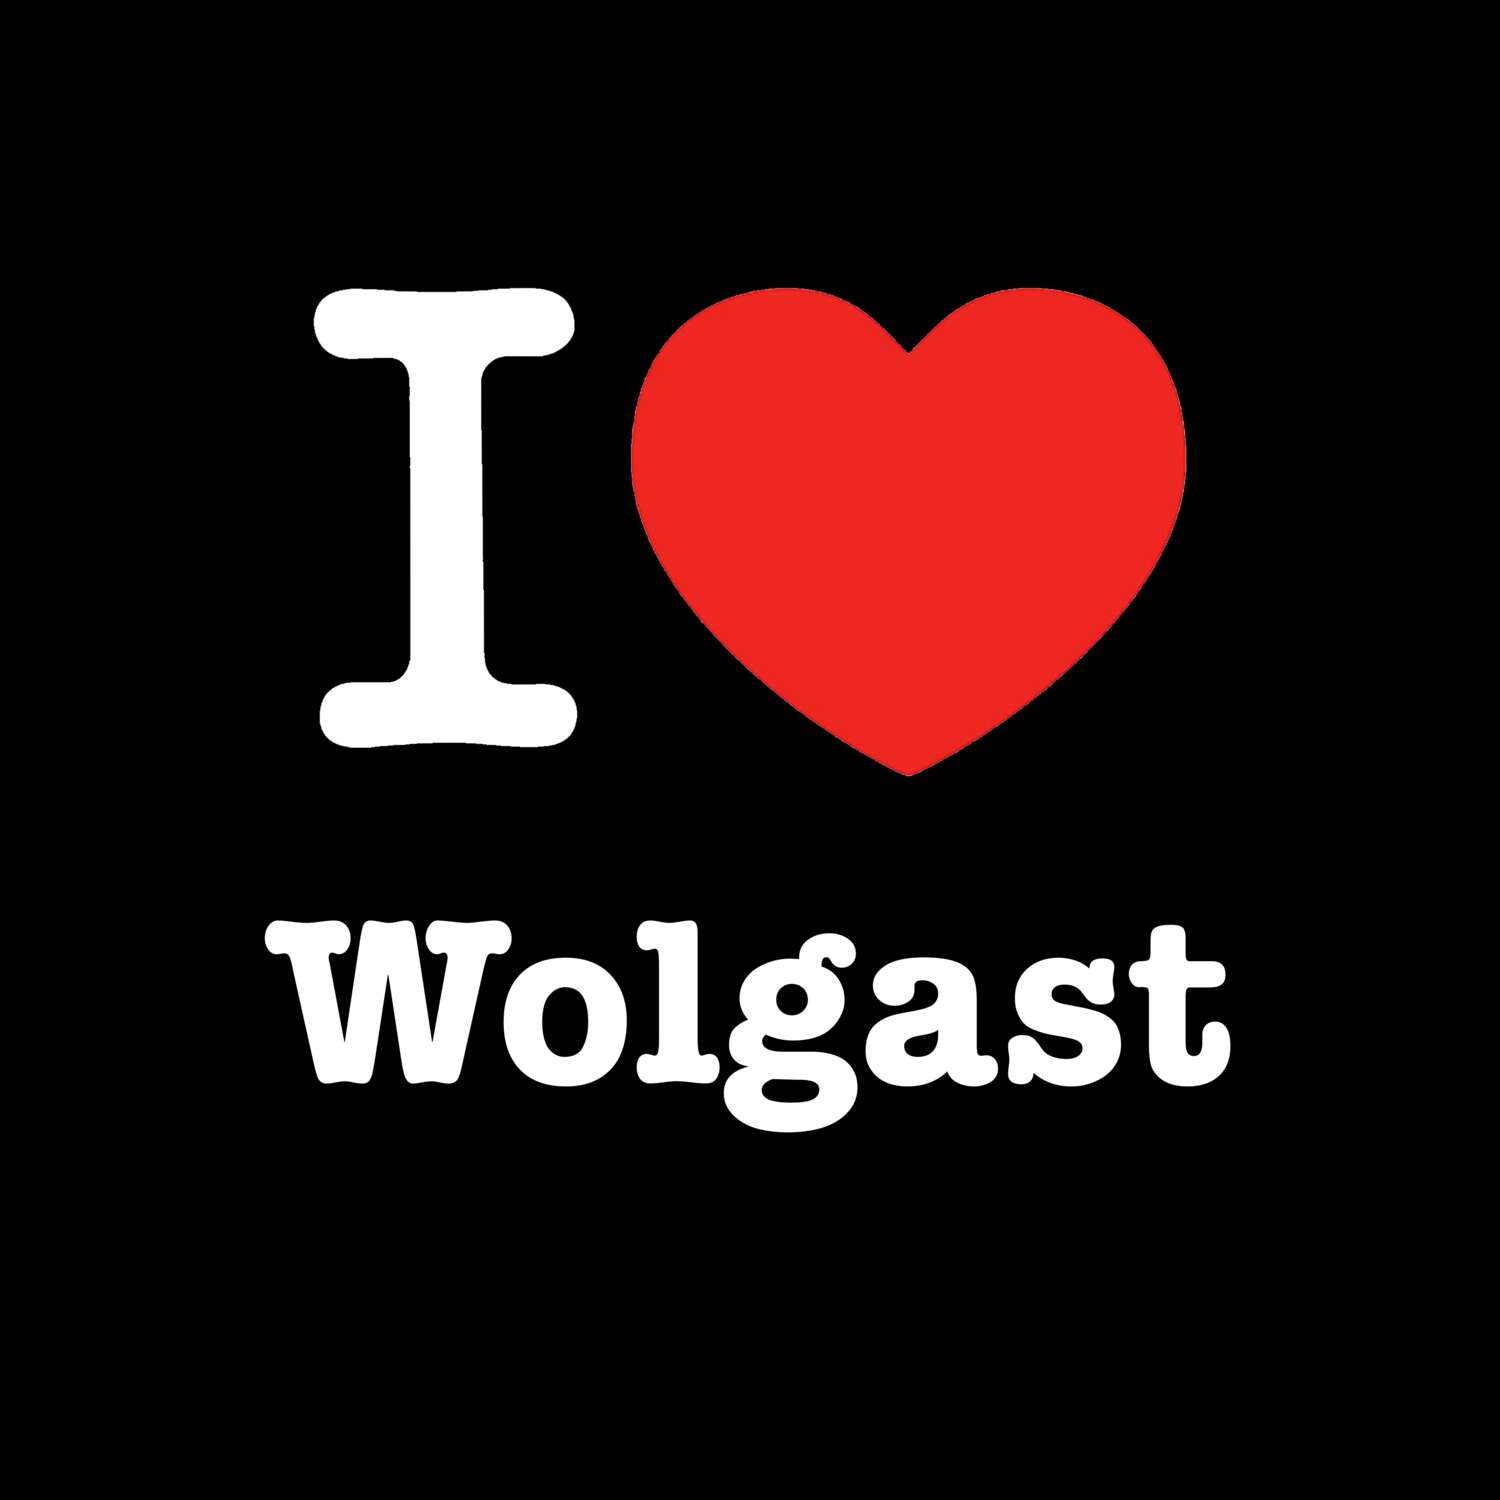 Wolgast T-Shirt »I love«